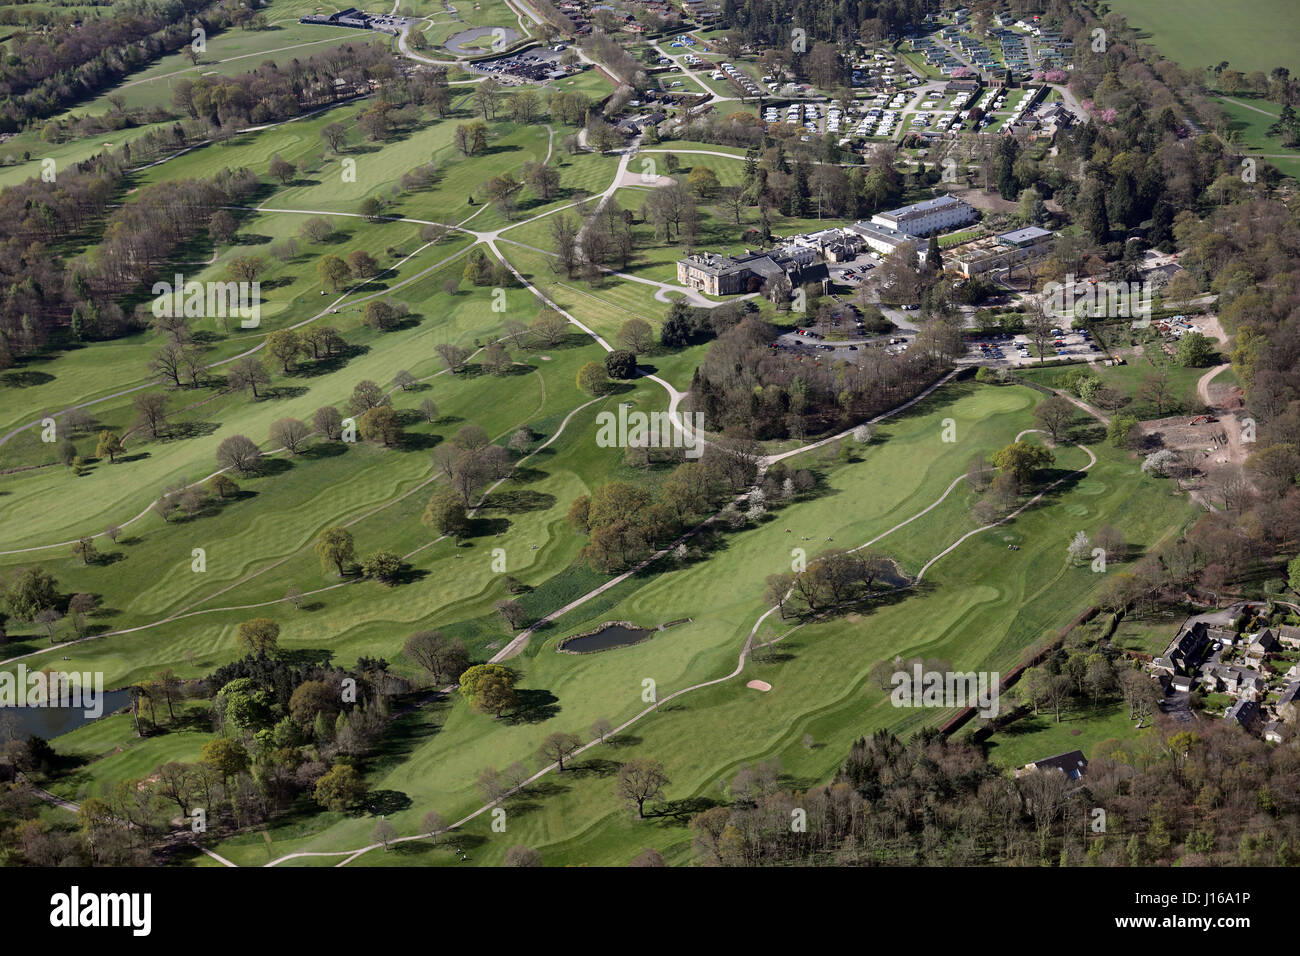 Vue aérienne de Rudding Park Golf & Hotel, Harrogate, Yorkshire, UK Banque D'Images